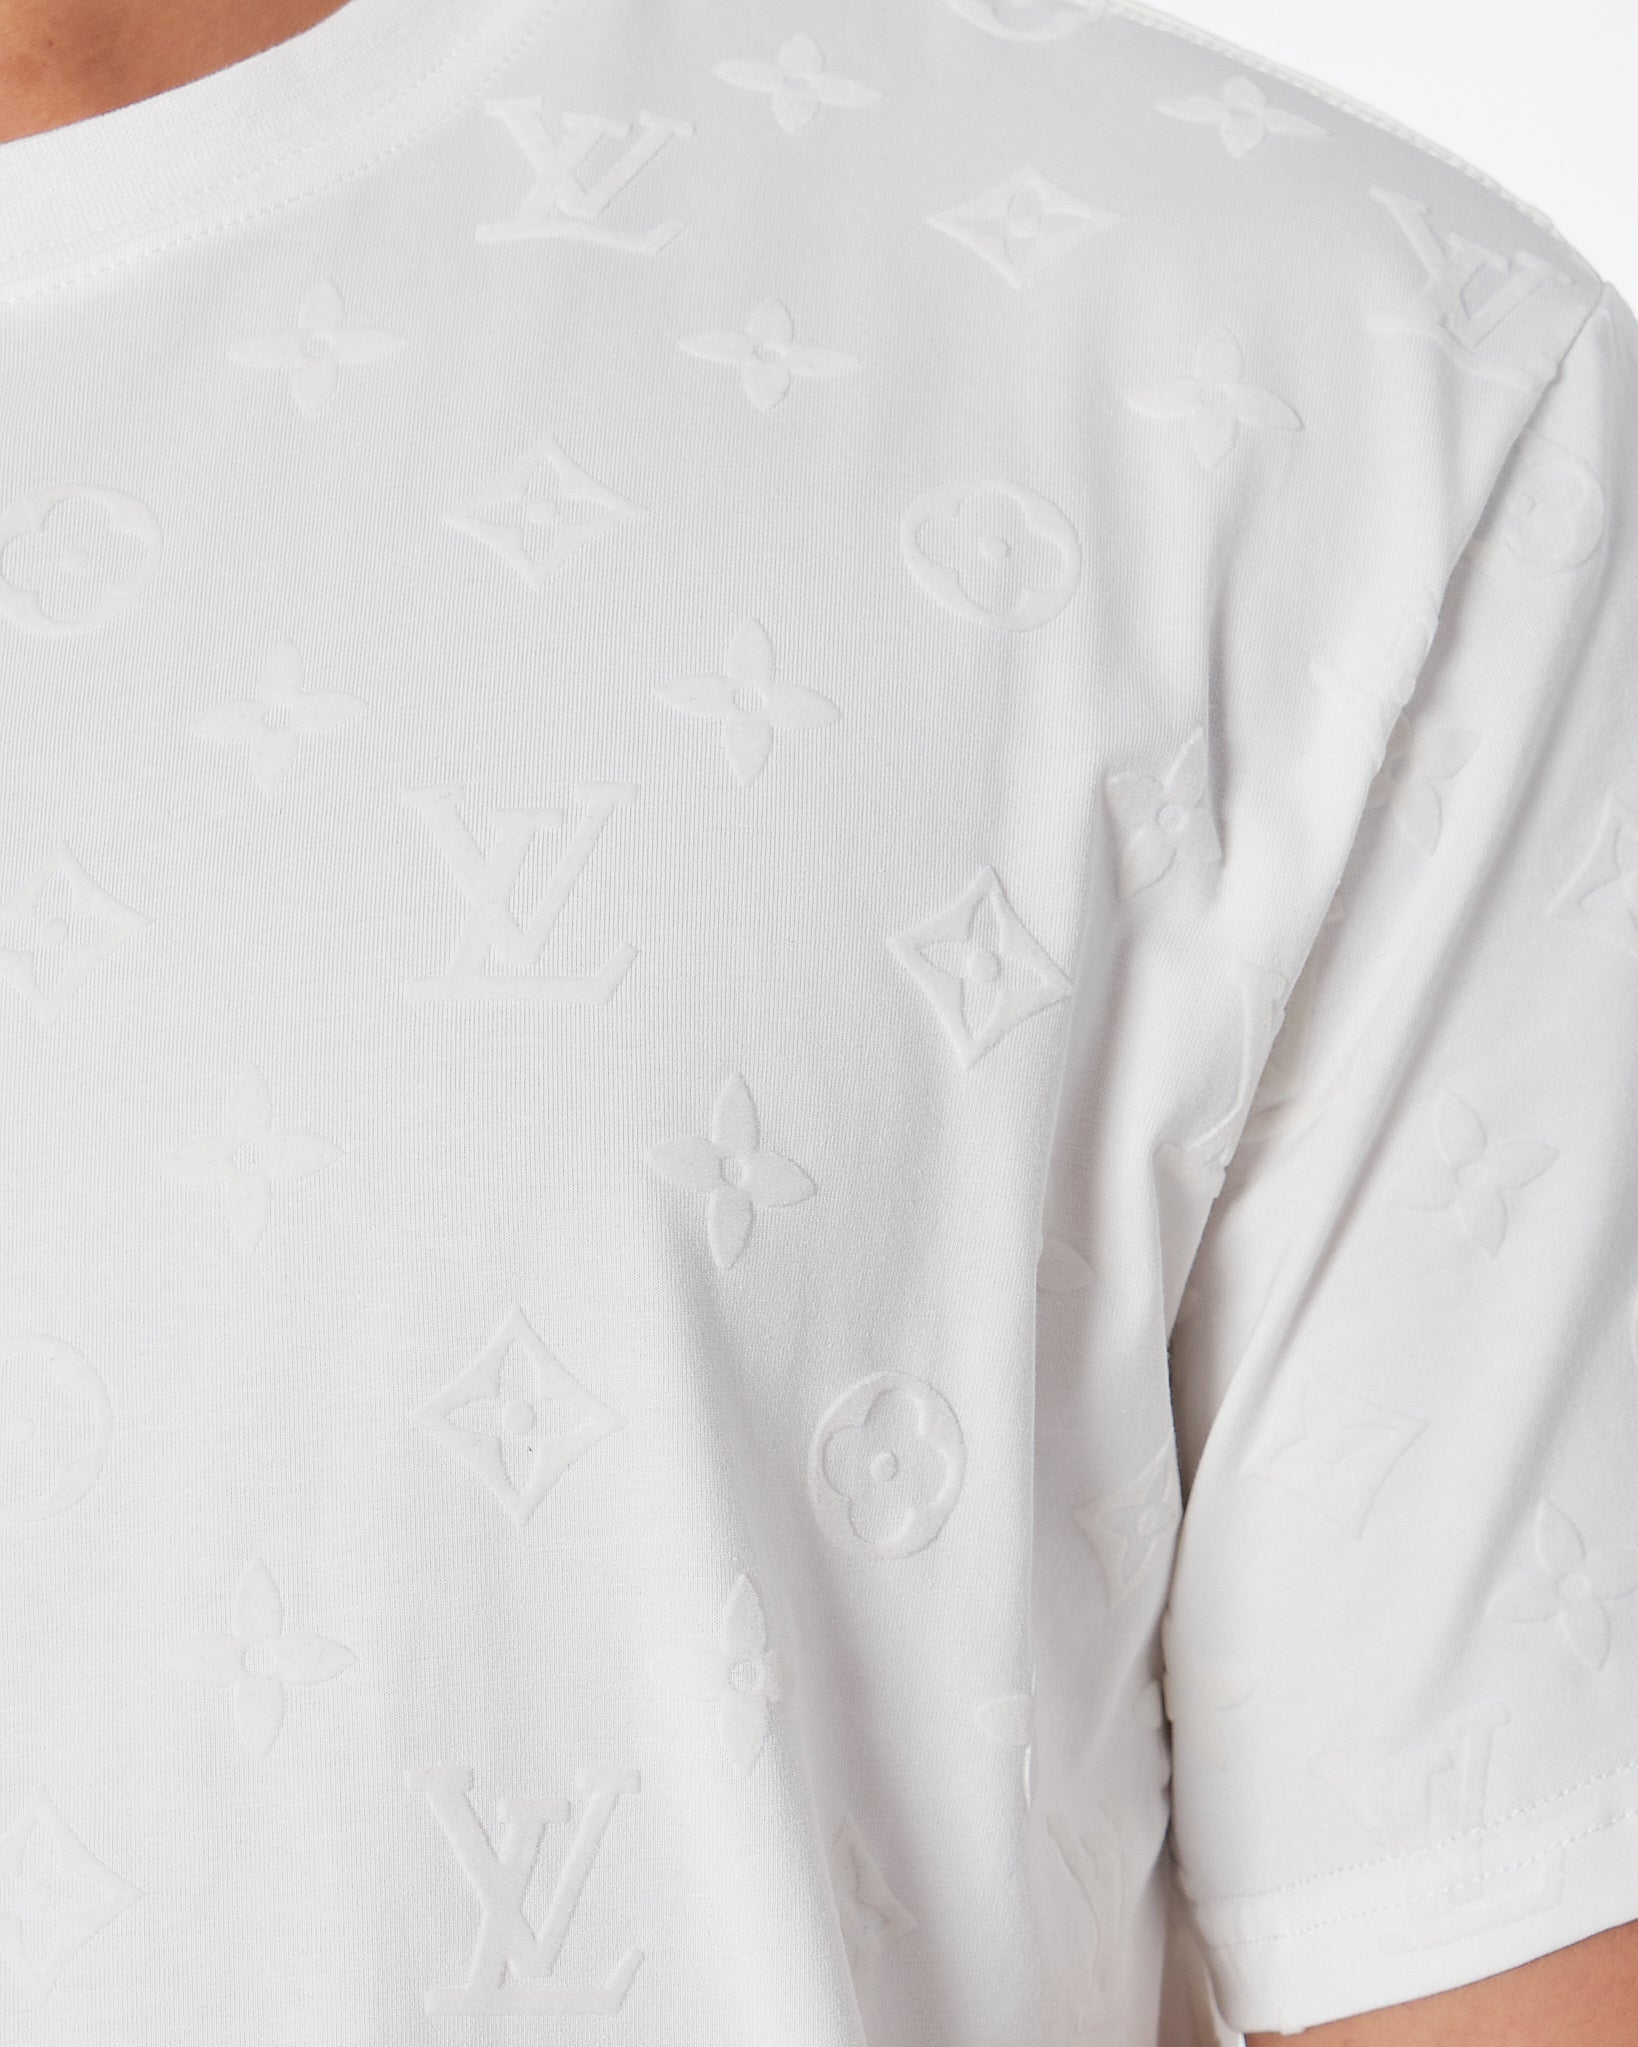 LV Monogram Over Printed Men White T-Shirt 24.90